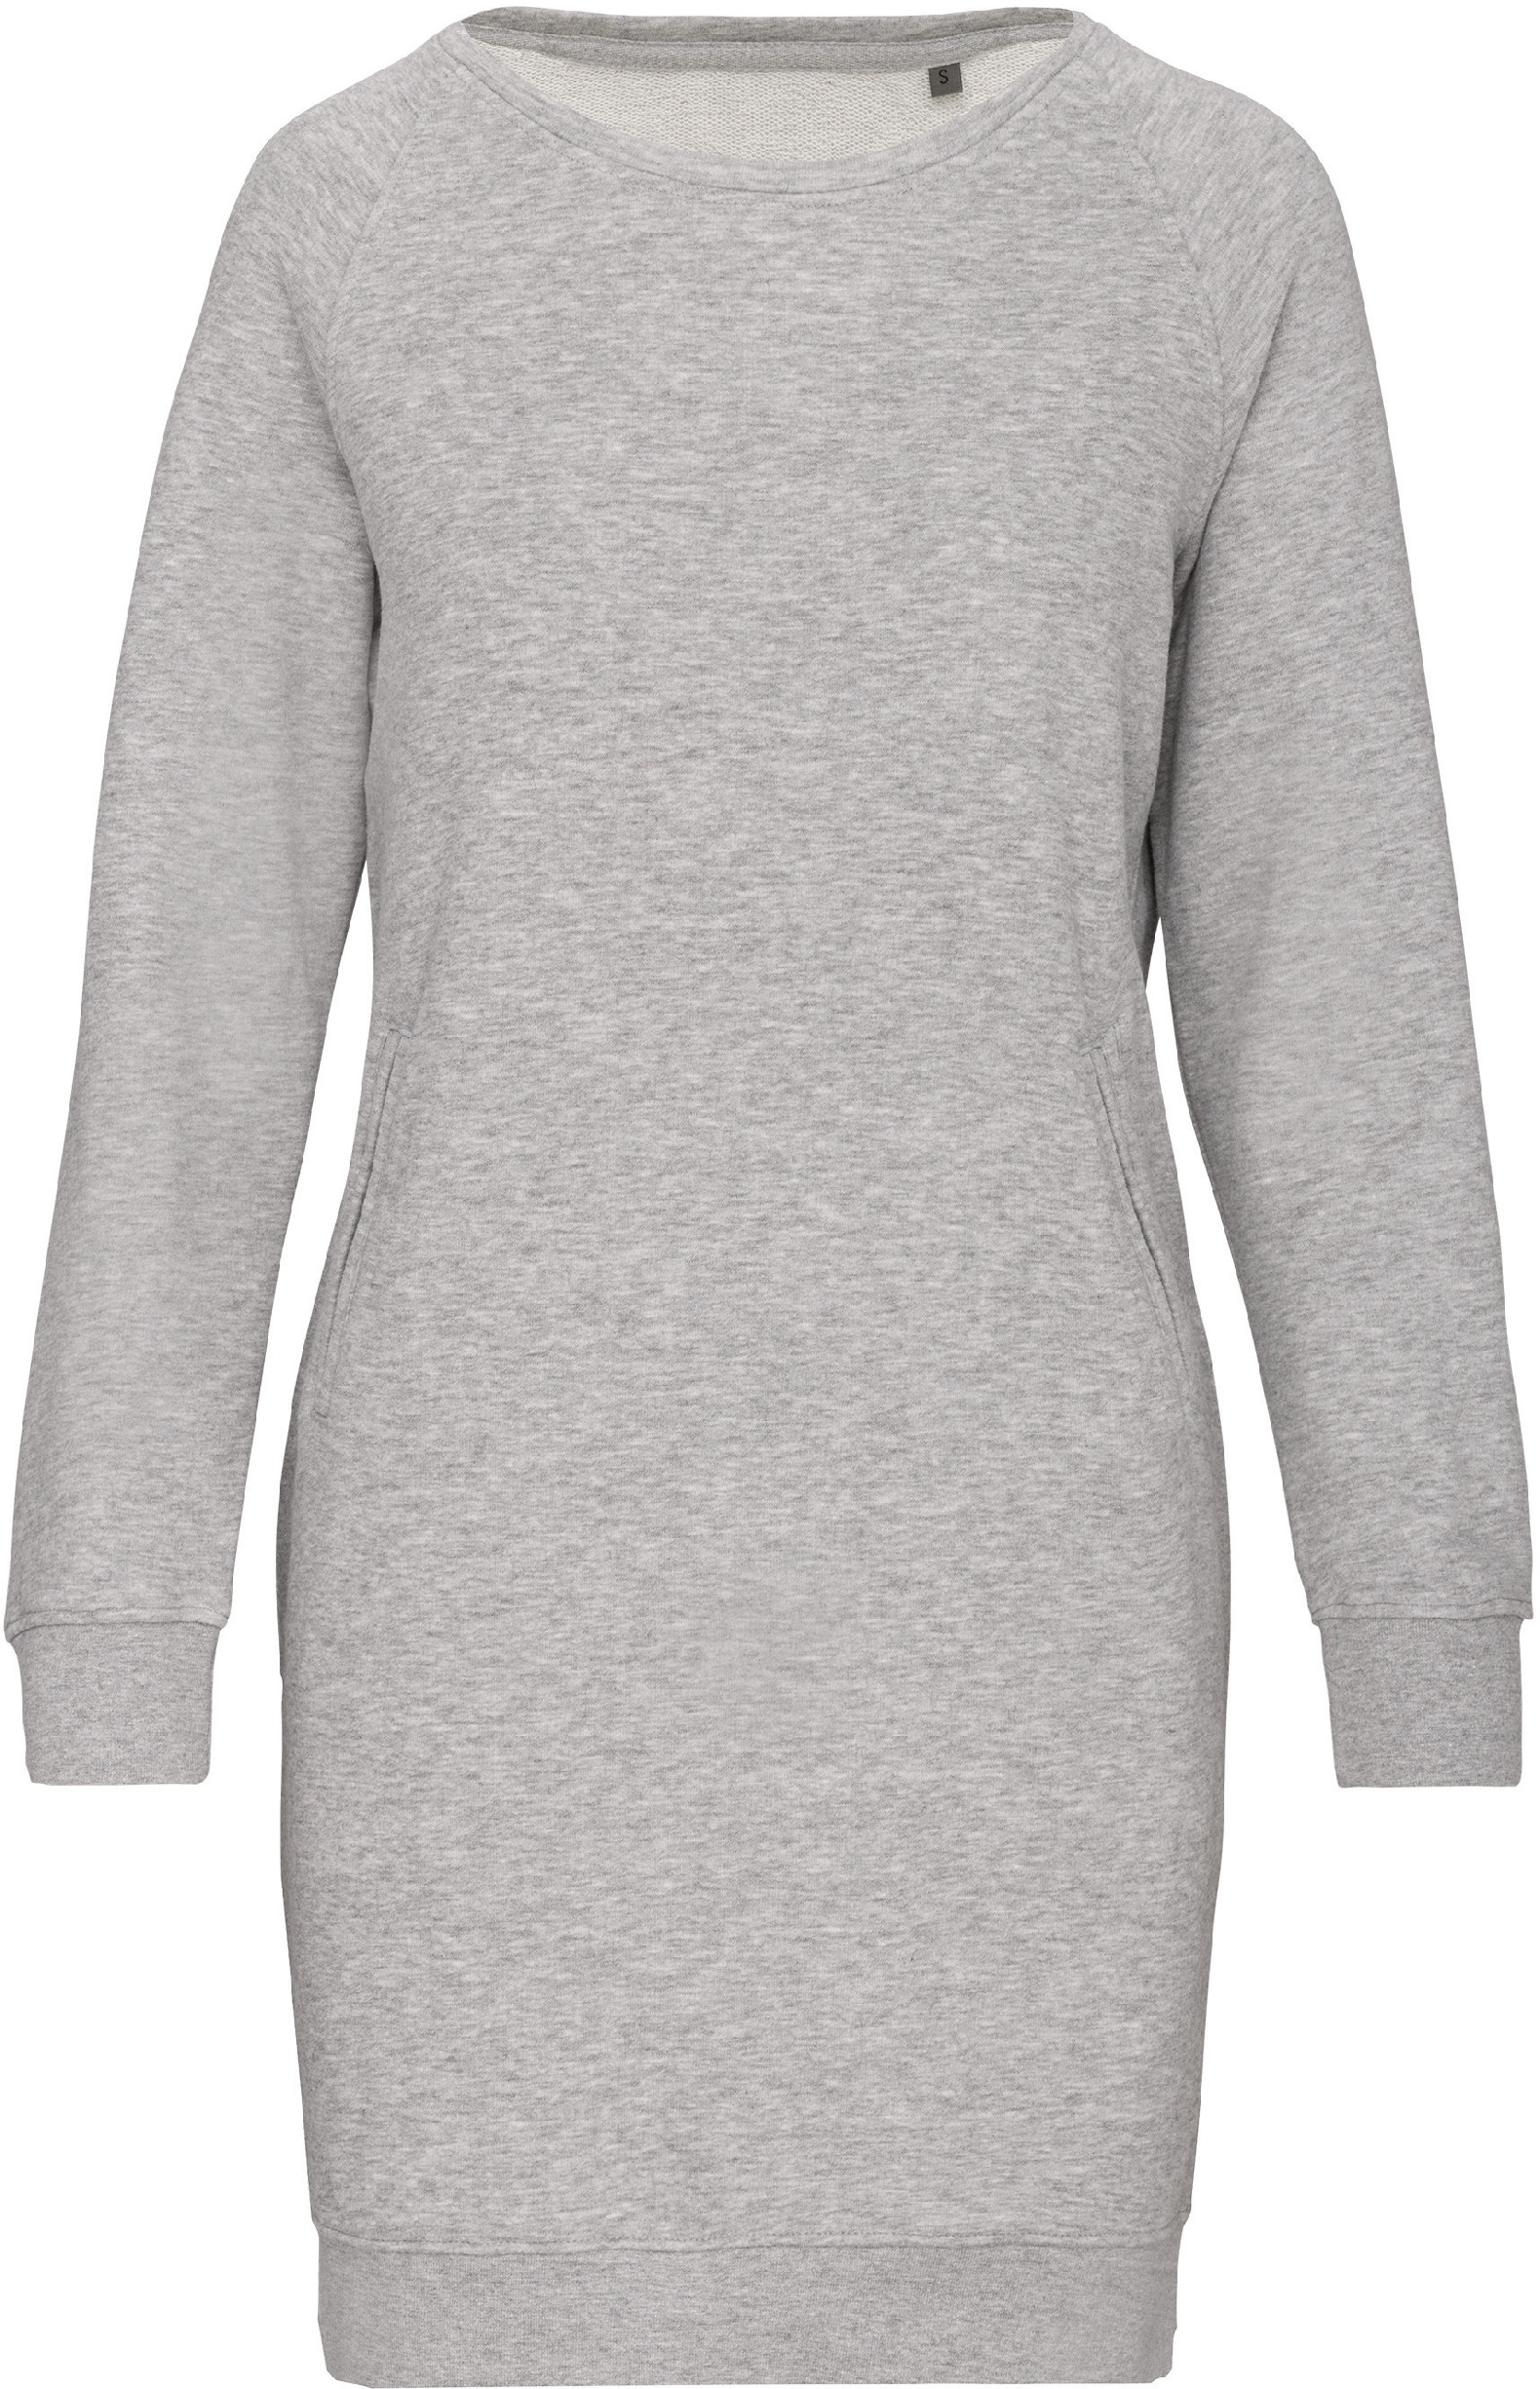 Organické teplákové šaty Barva: Light Grey Heather, Velikost: L